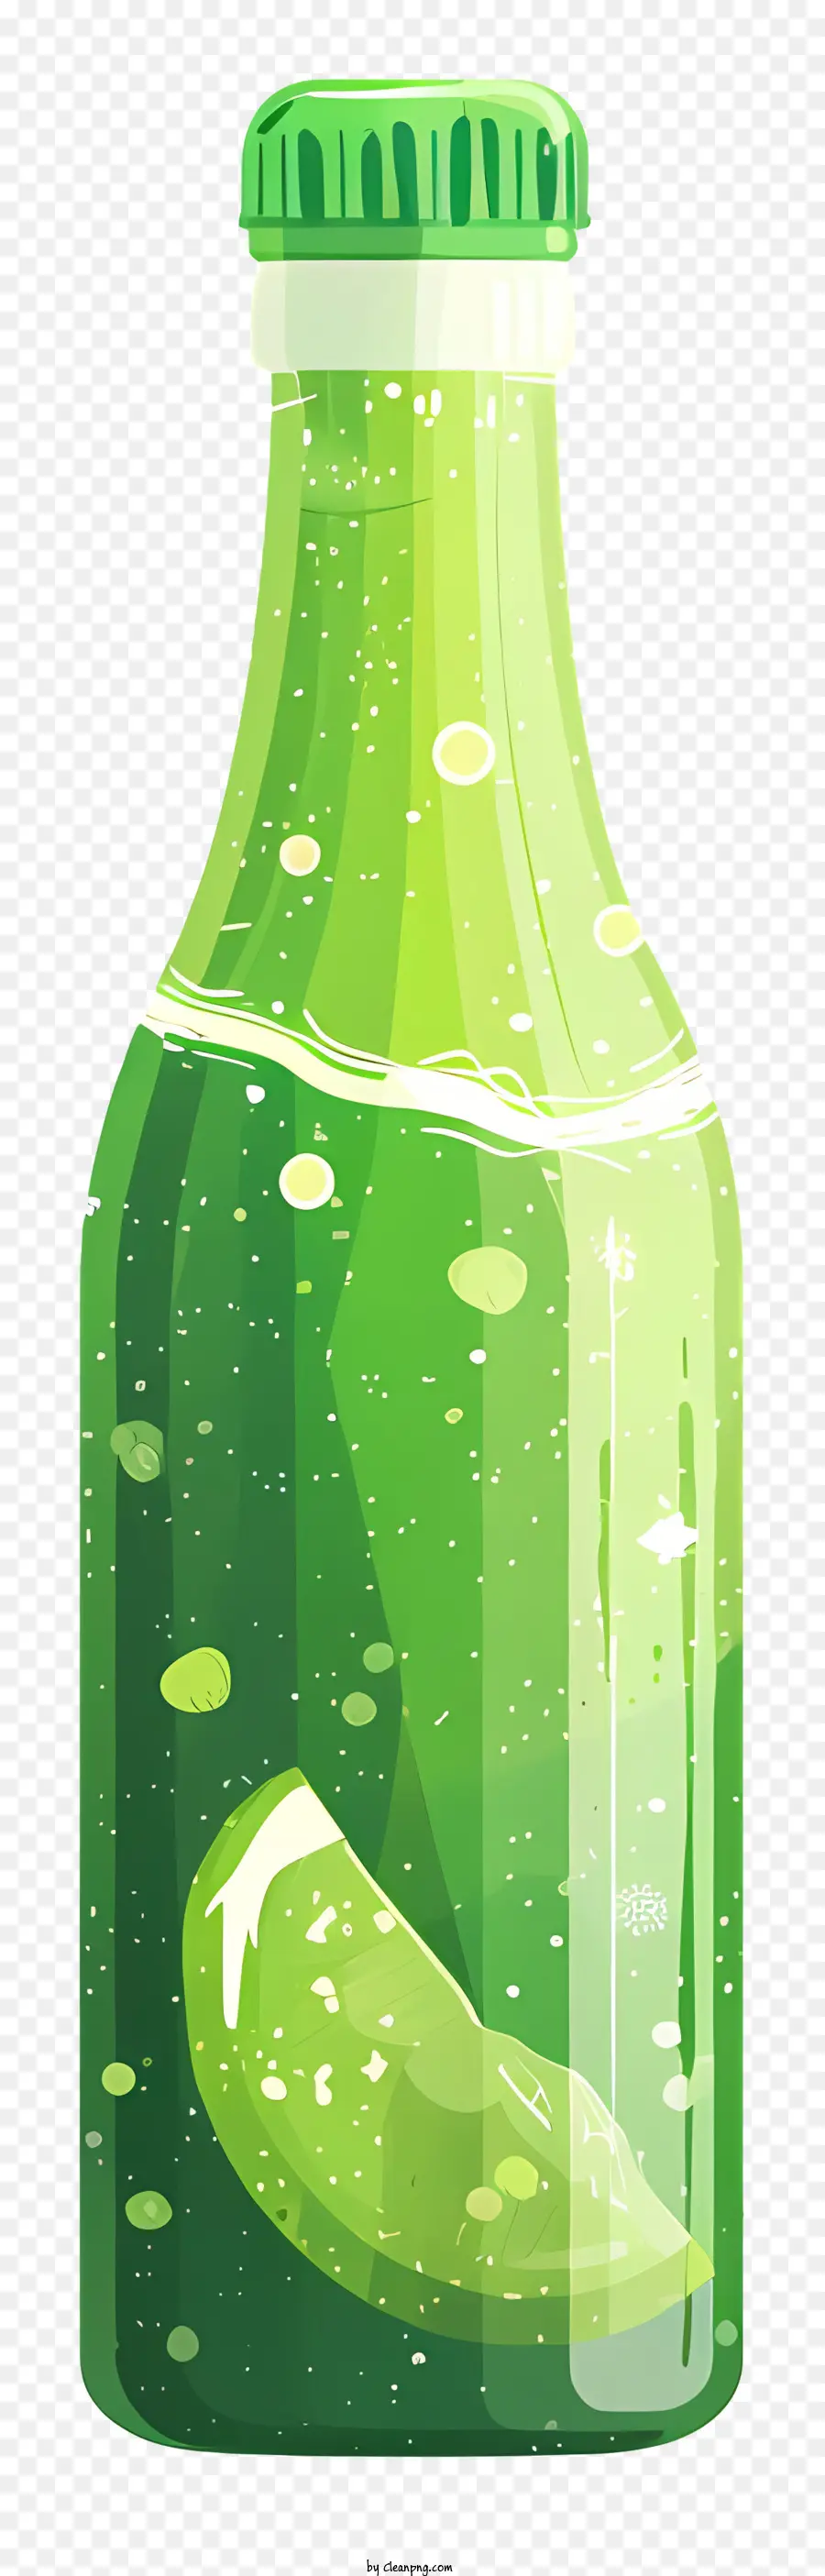 thức uống lạnh - Chai thủy tinh màu xanh lá cây có nhãn nước chanh